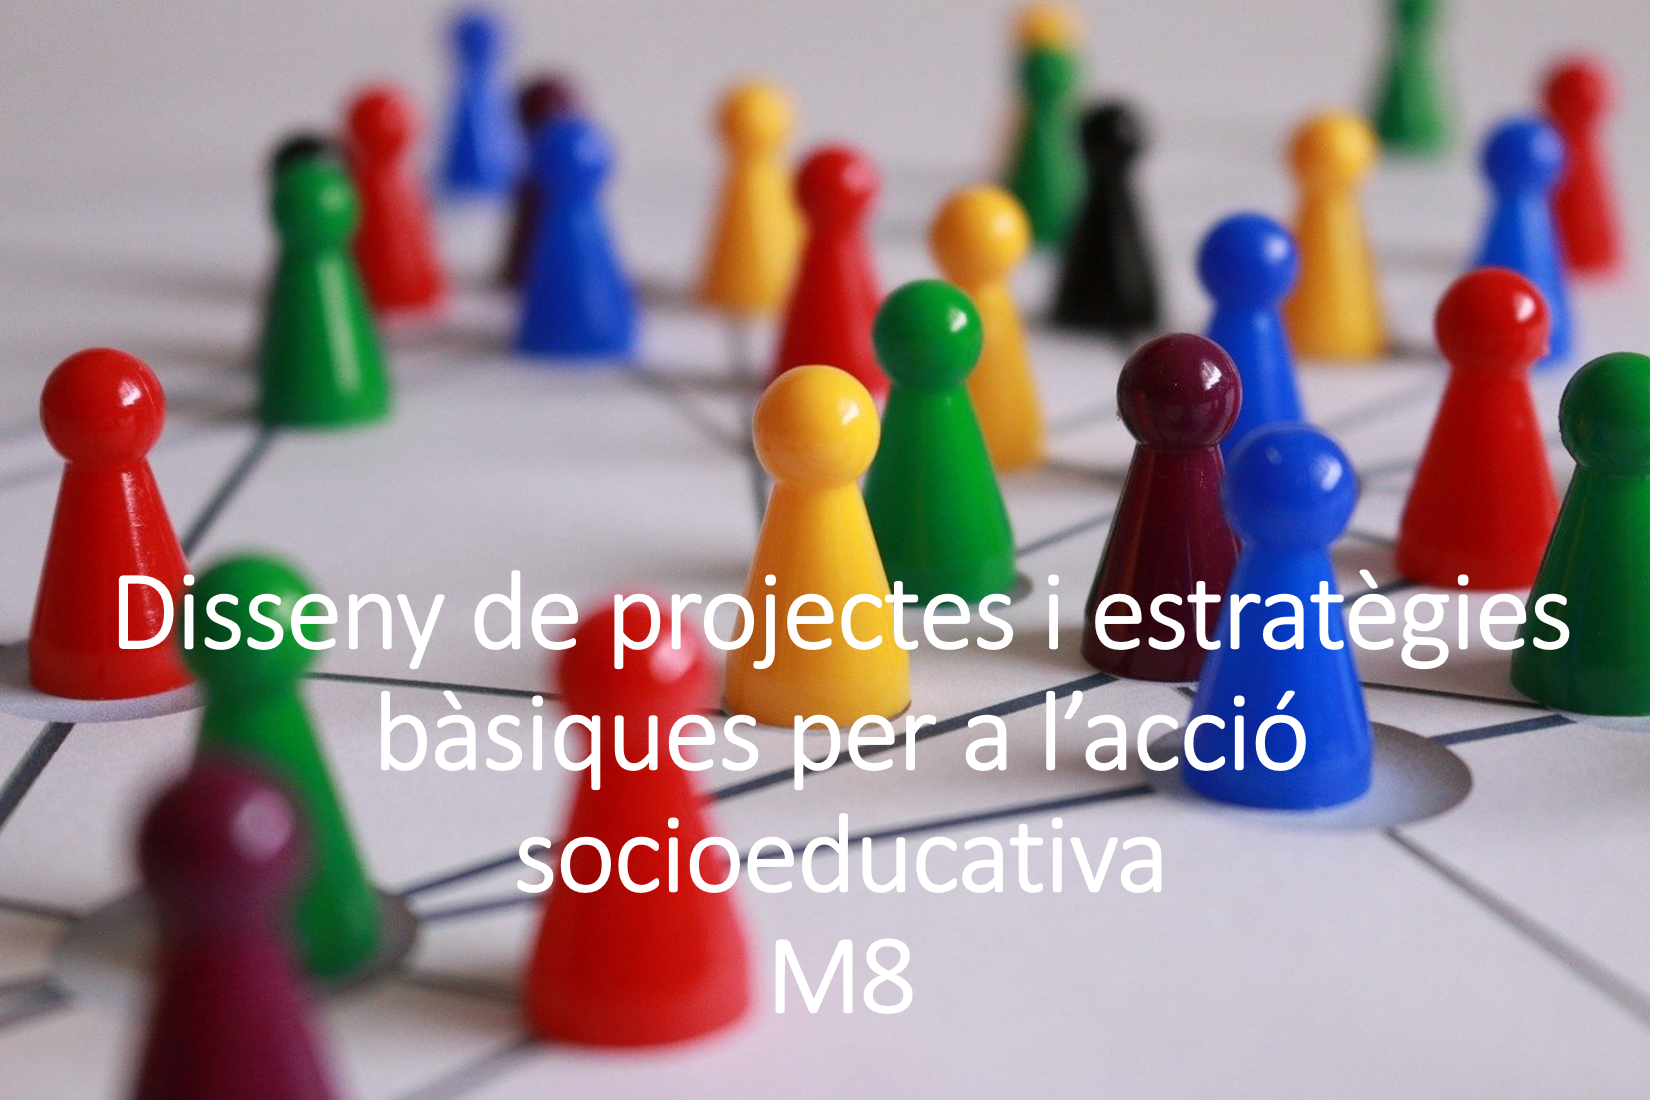 Disseny de projectes i estratègies bàsiques per a l'acció socioeducativa (3101G02040/2020)